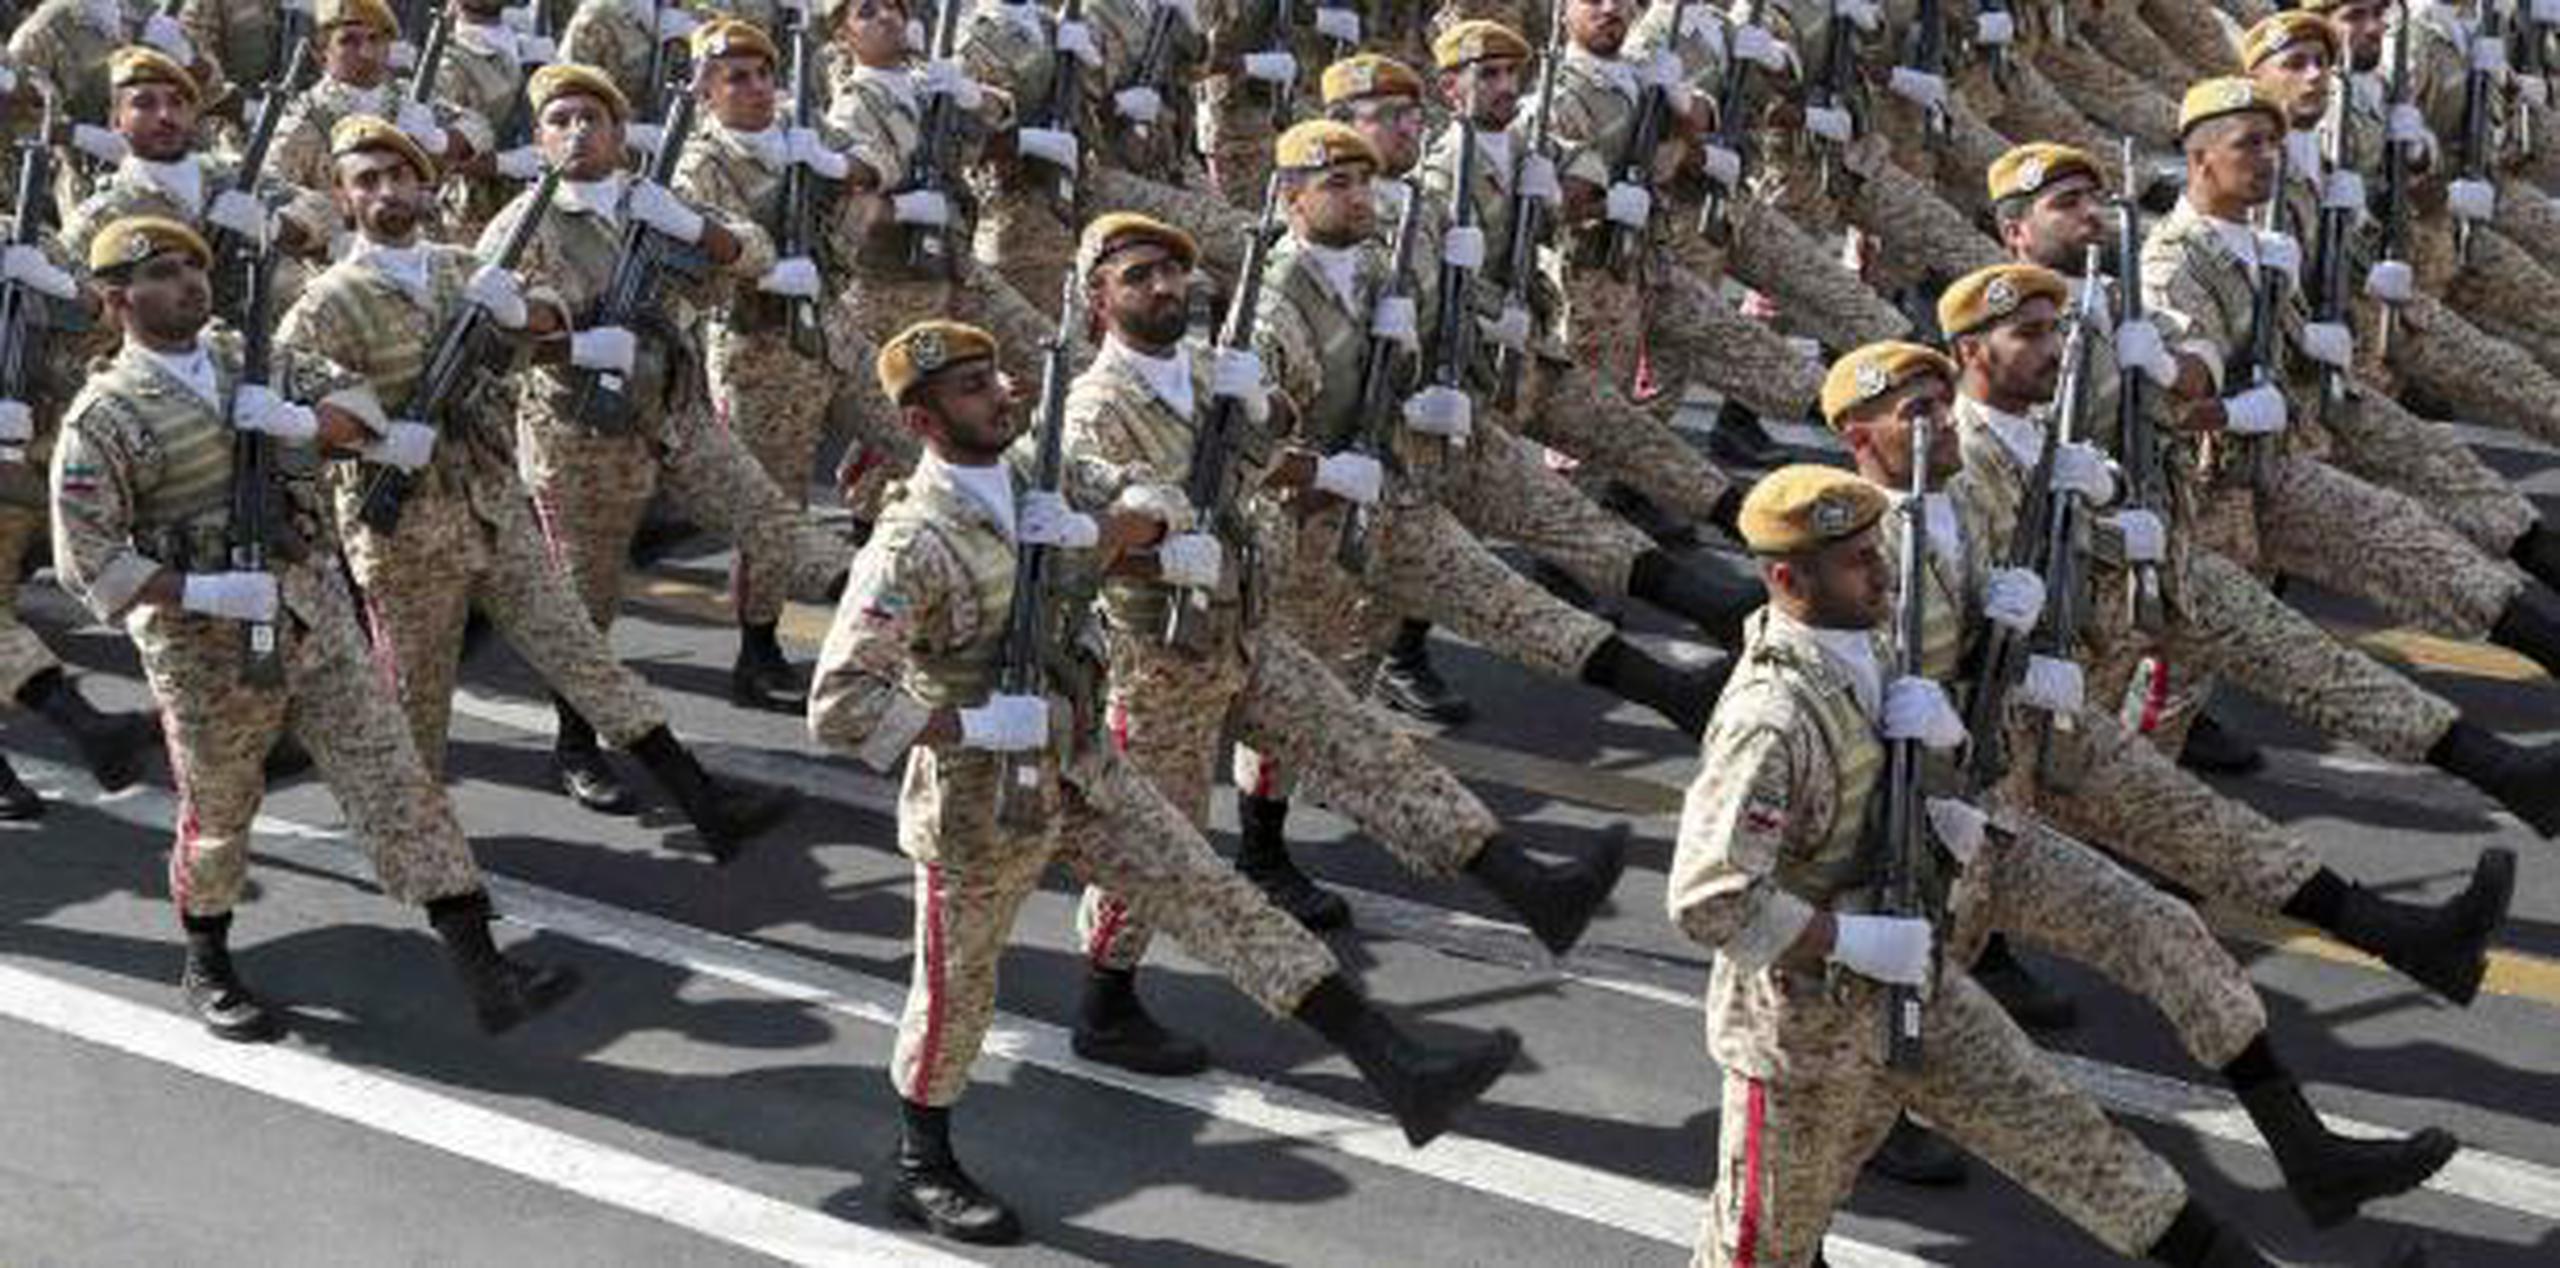 Rohaní aprovechó un gran desfile militar en Teherán para, por un lado, mandar una advertencia del poderío defensivo de Irán y, por otro, congraciarse con los países de la región. (AP)